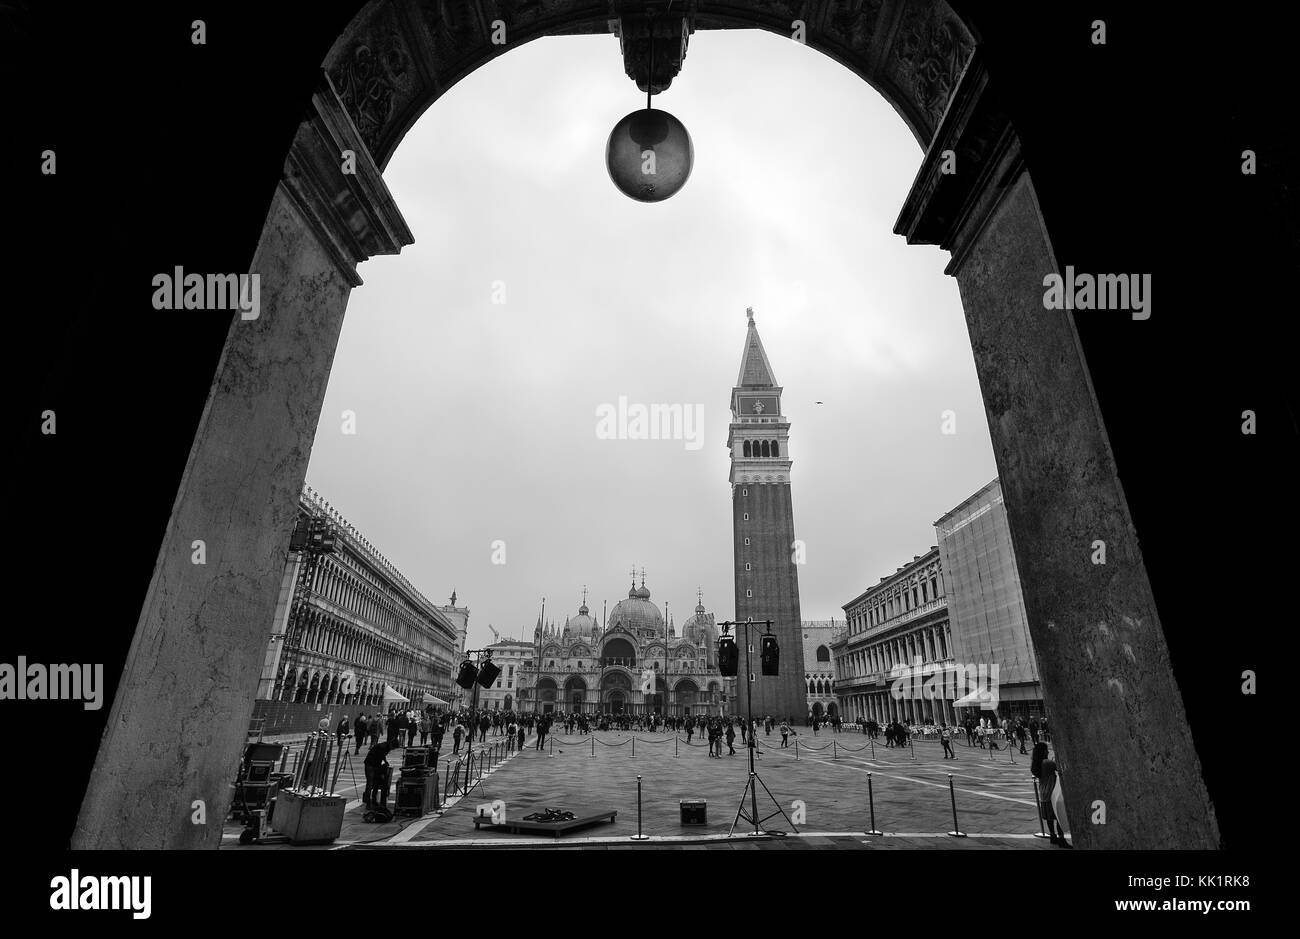 Venecia (Venezia), Italia, 18 de octubre de 2017 - Vista de la plaza de San Marcos, la Basílica de San Marco y la torre del campanario, Venecia, Italia Foto de stock